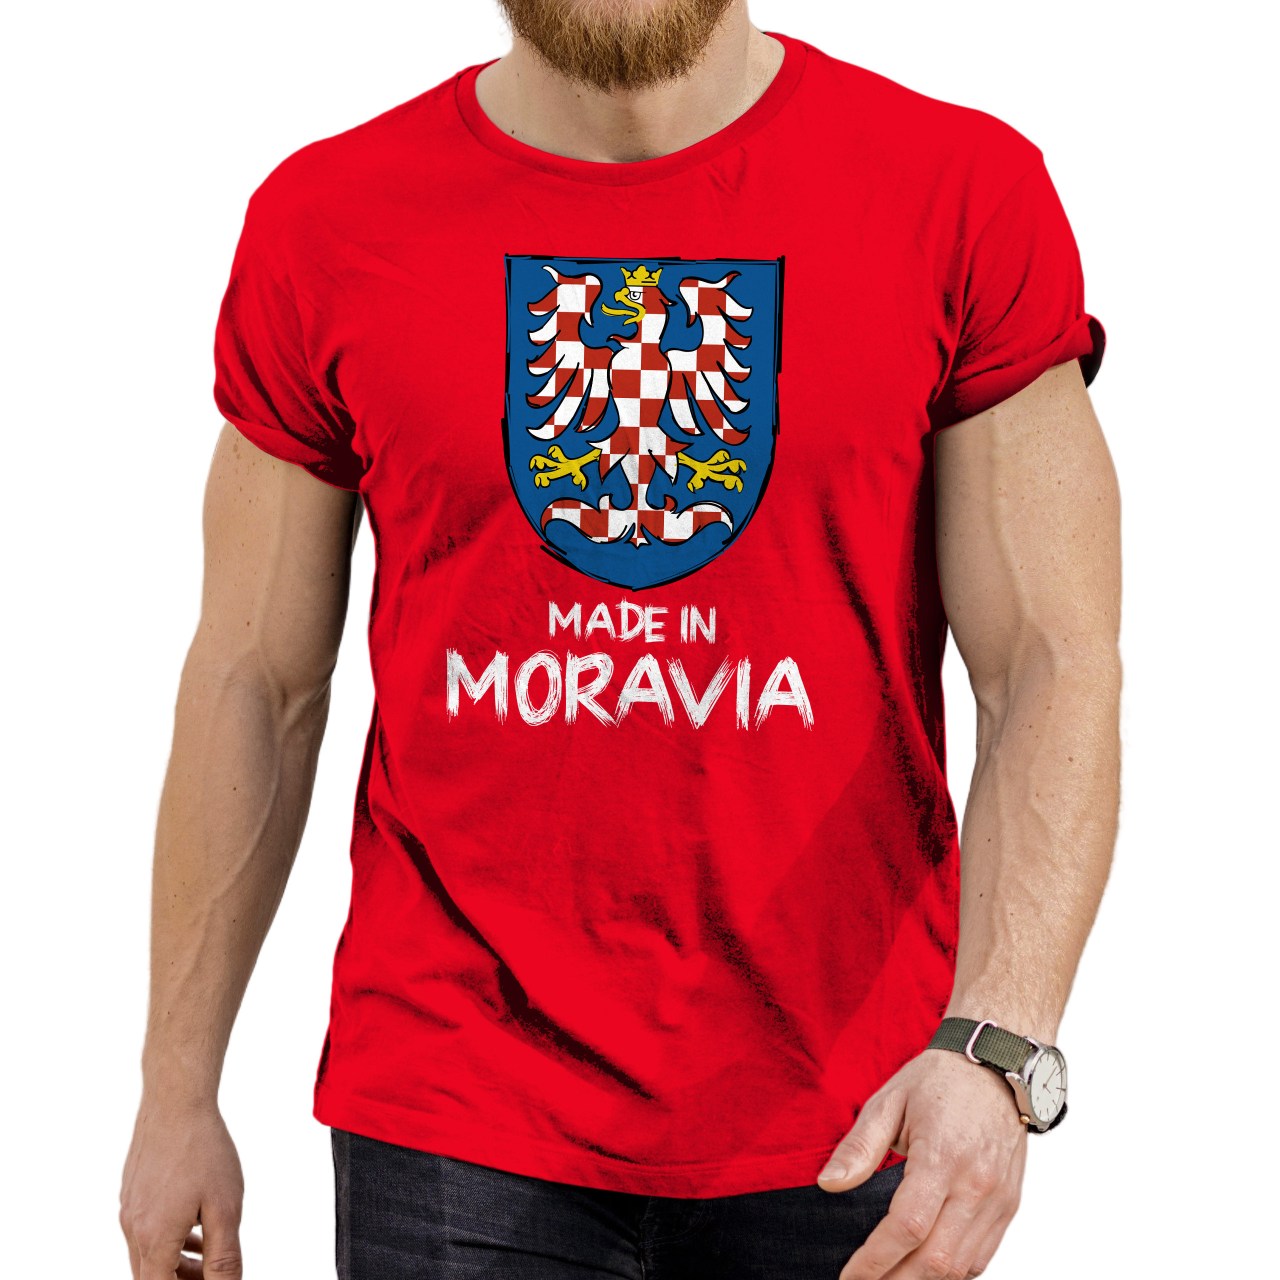 Pánské tričko s potiskem “Made in Moravia” 